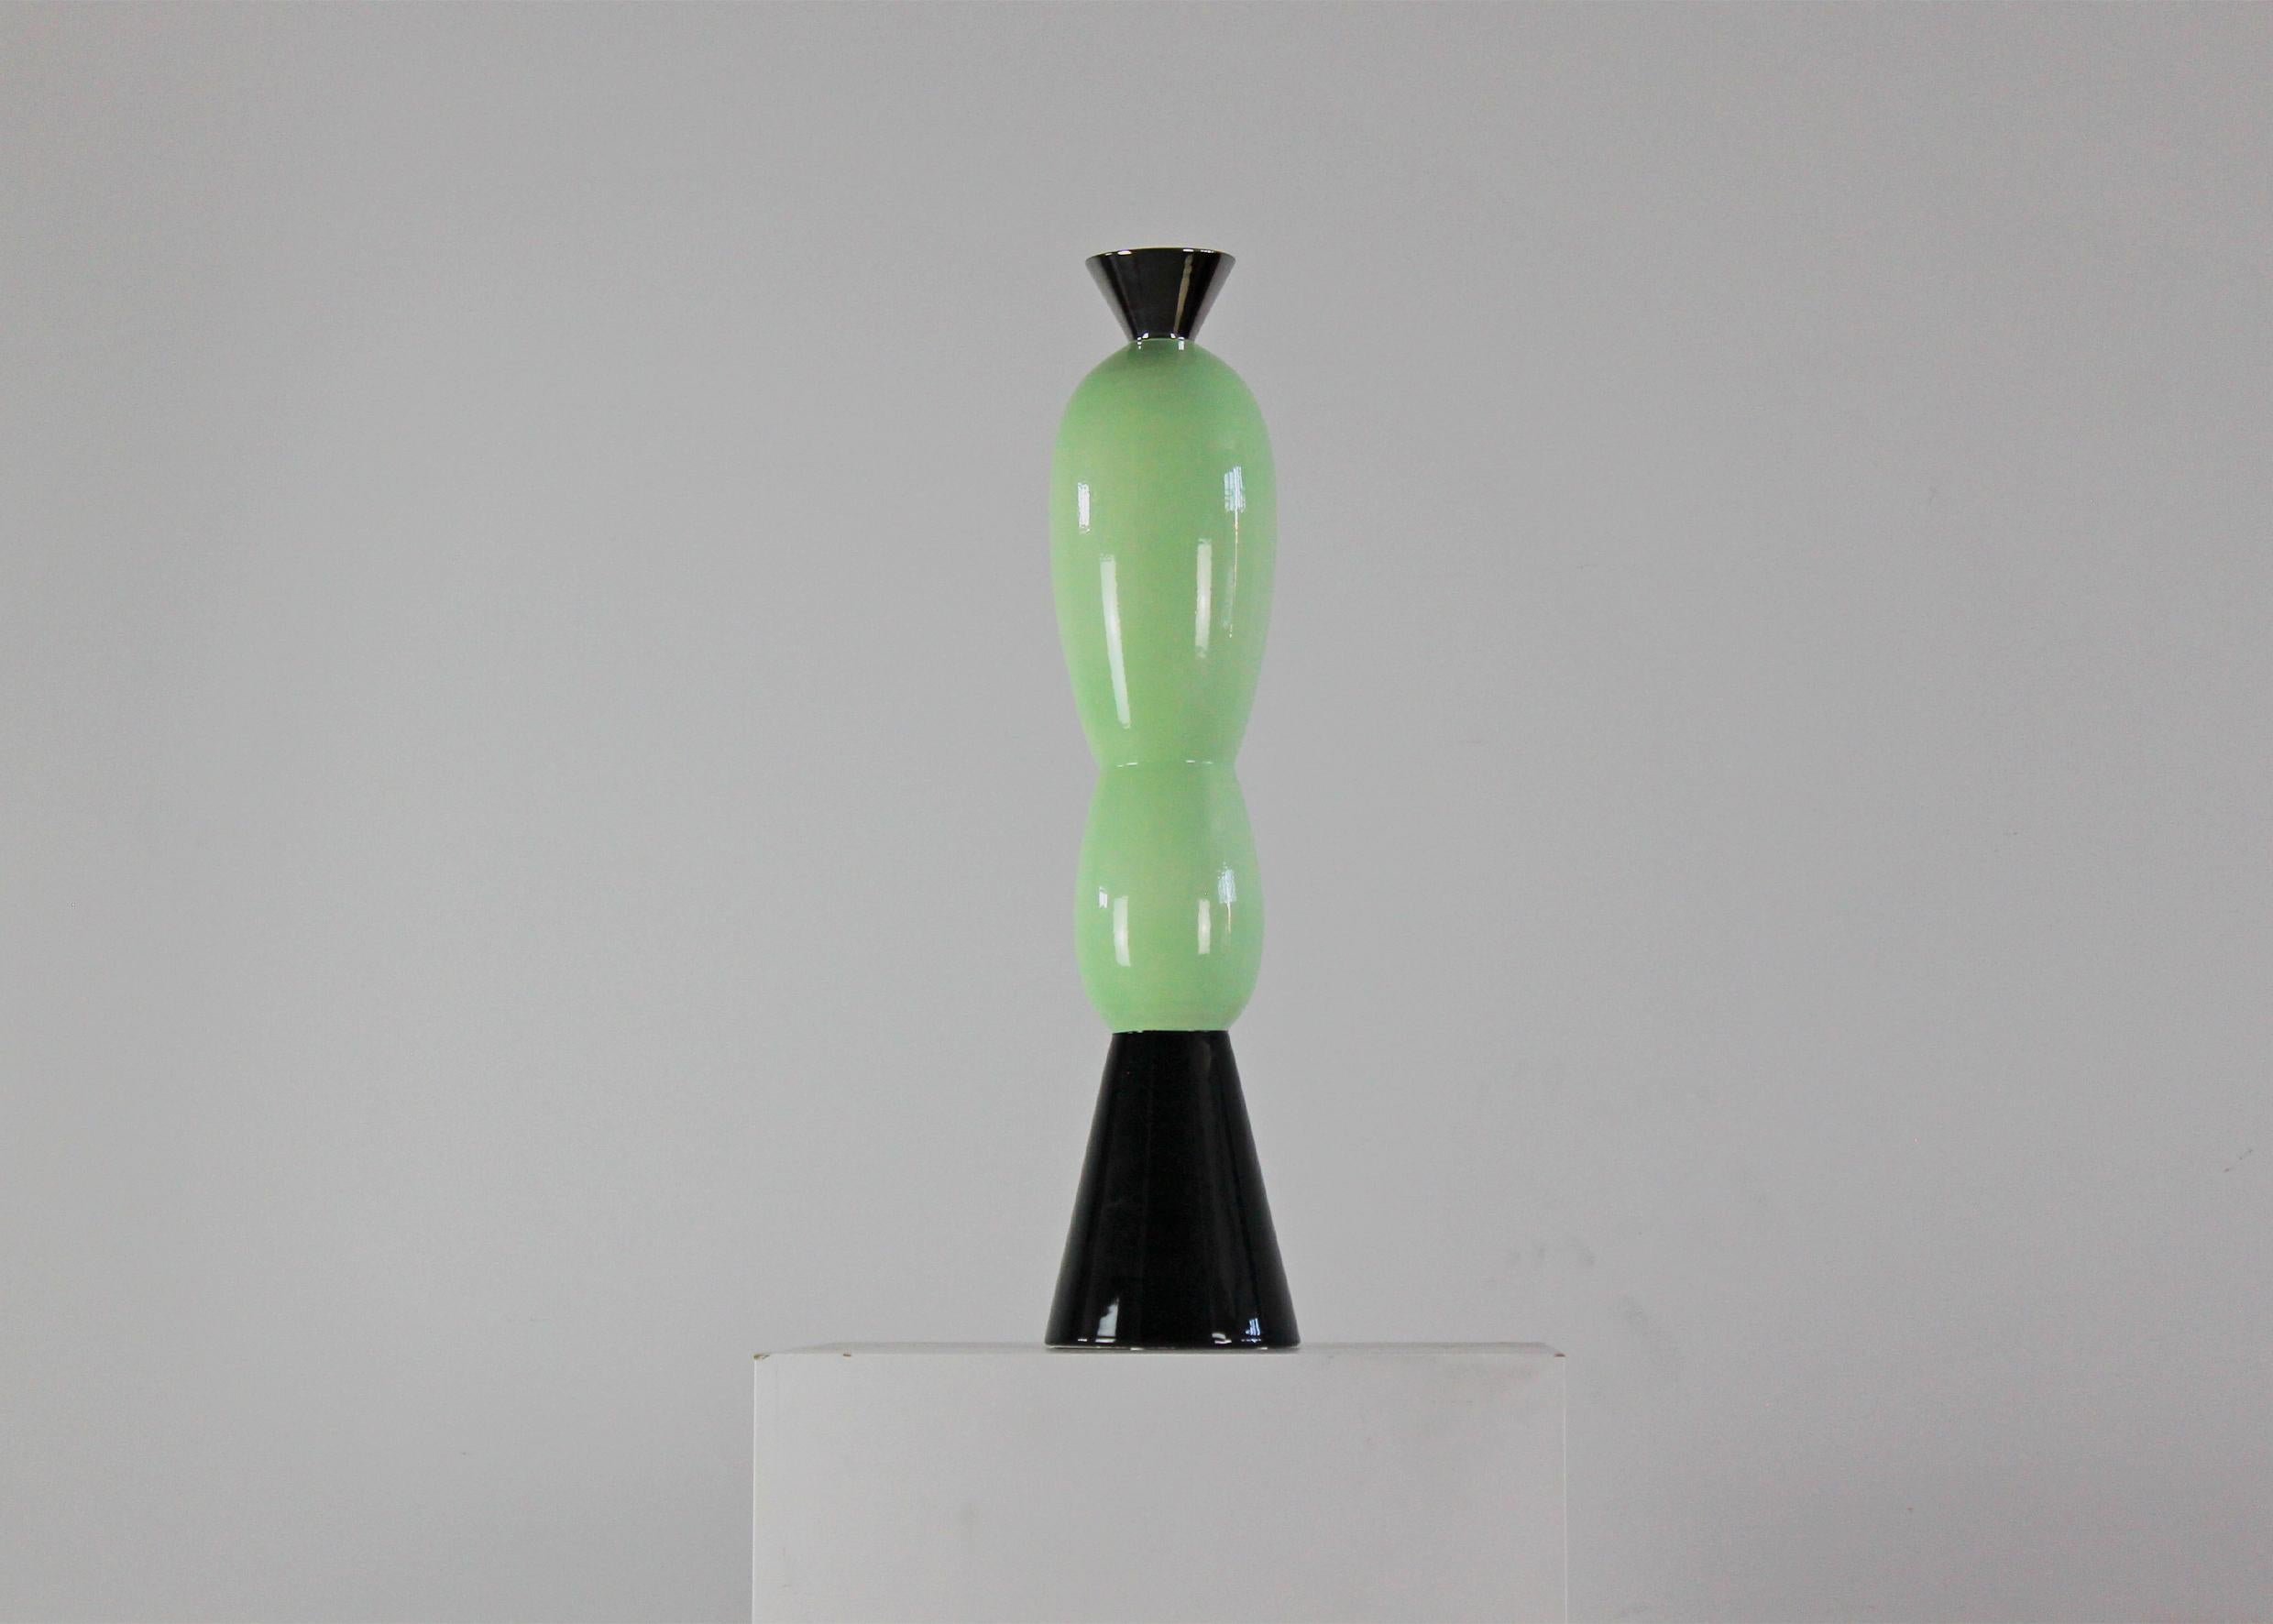 Statuette en céramique Elgin en édition limitée entièrement réalisée en céramique de la série 12 Columns conçue par Alessandro Mendini pour Superego, 2008. 

Le noir et le turquoise se rencontrent pour créer une silhouette sophistiquée qui peut